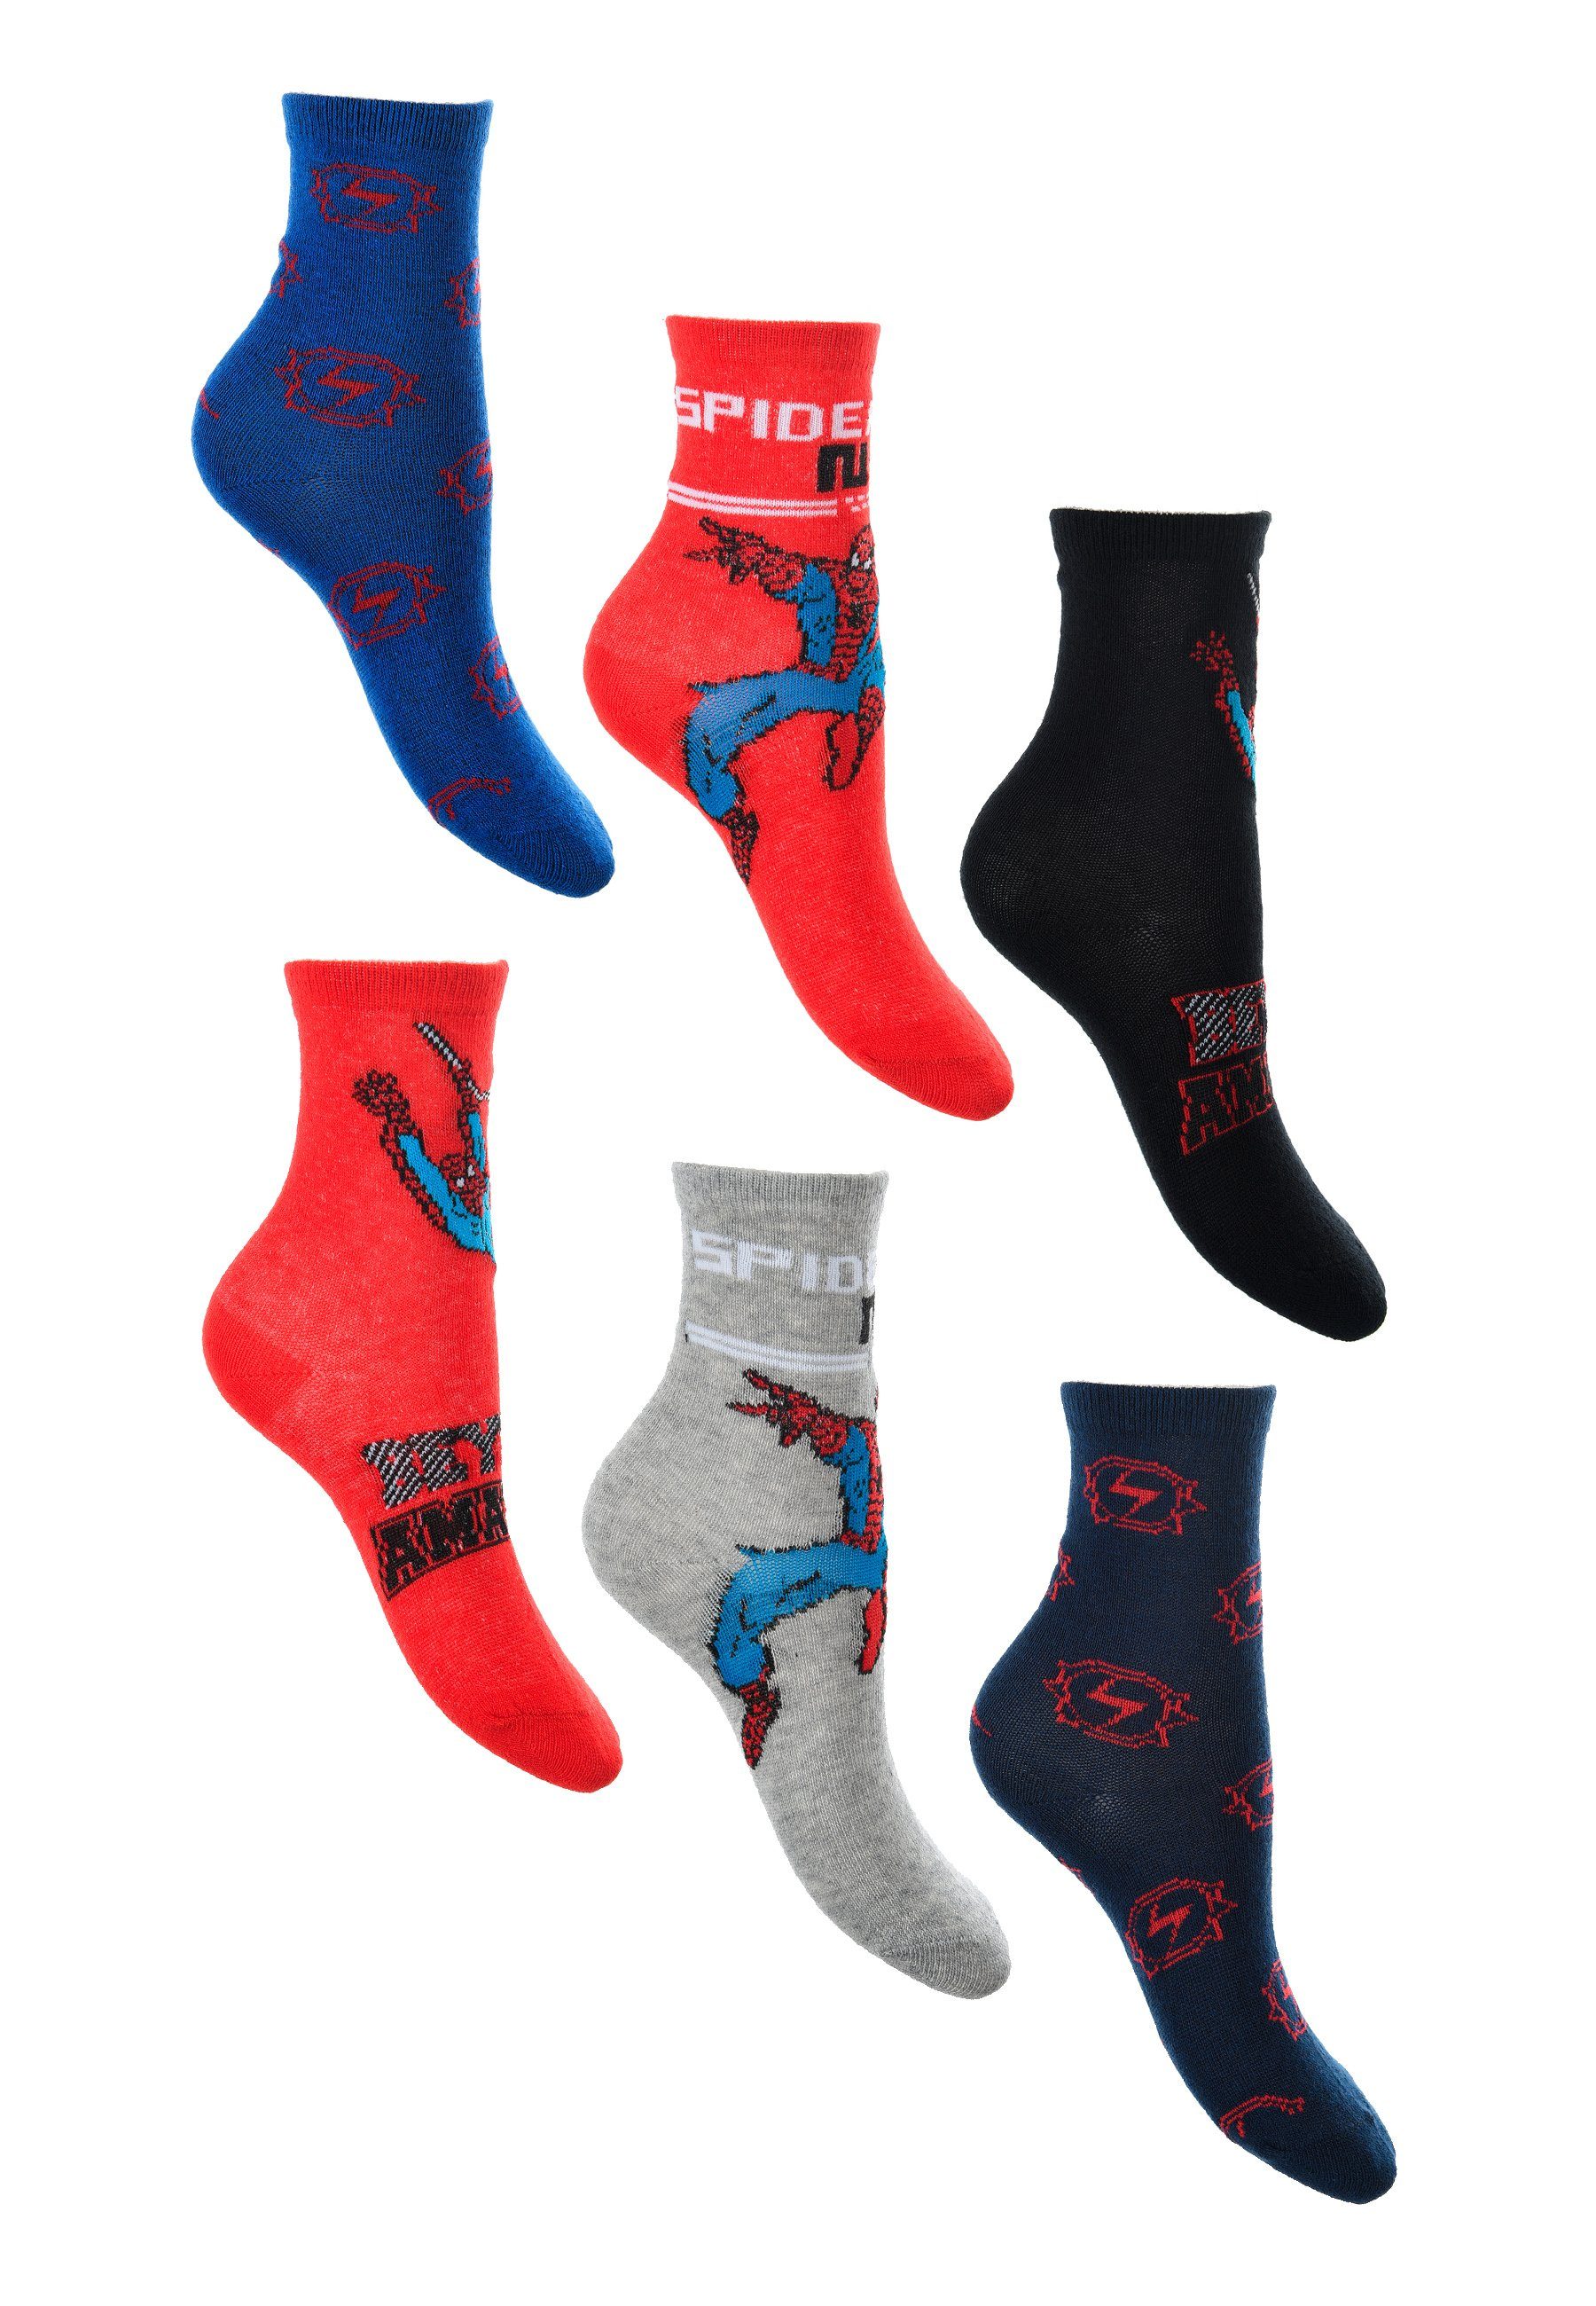 Spiderman Socken Kinder Jungen Strümpfe Socken (6-Paar)